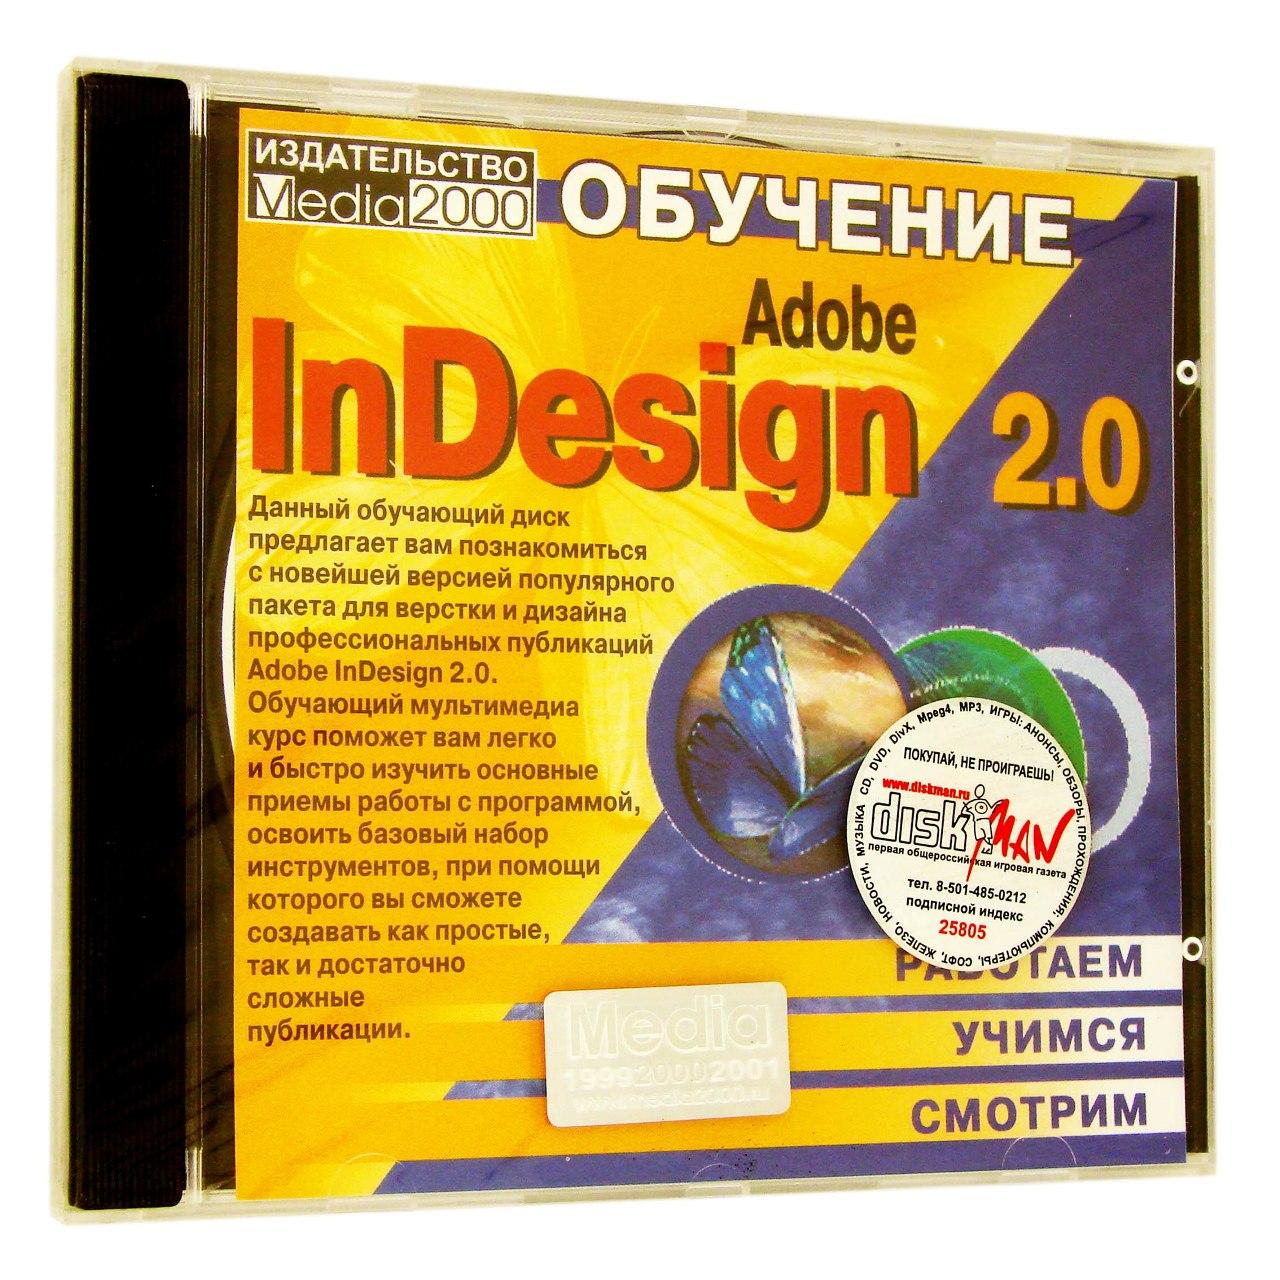 Компьютерный компакт-диск Обучение Adobe InDesign 2.0 (PC), фирма "Медиа 2000", 1CD